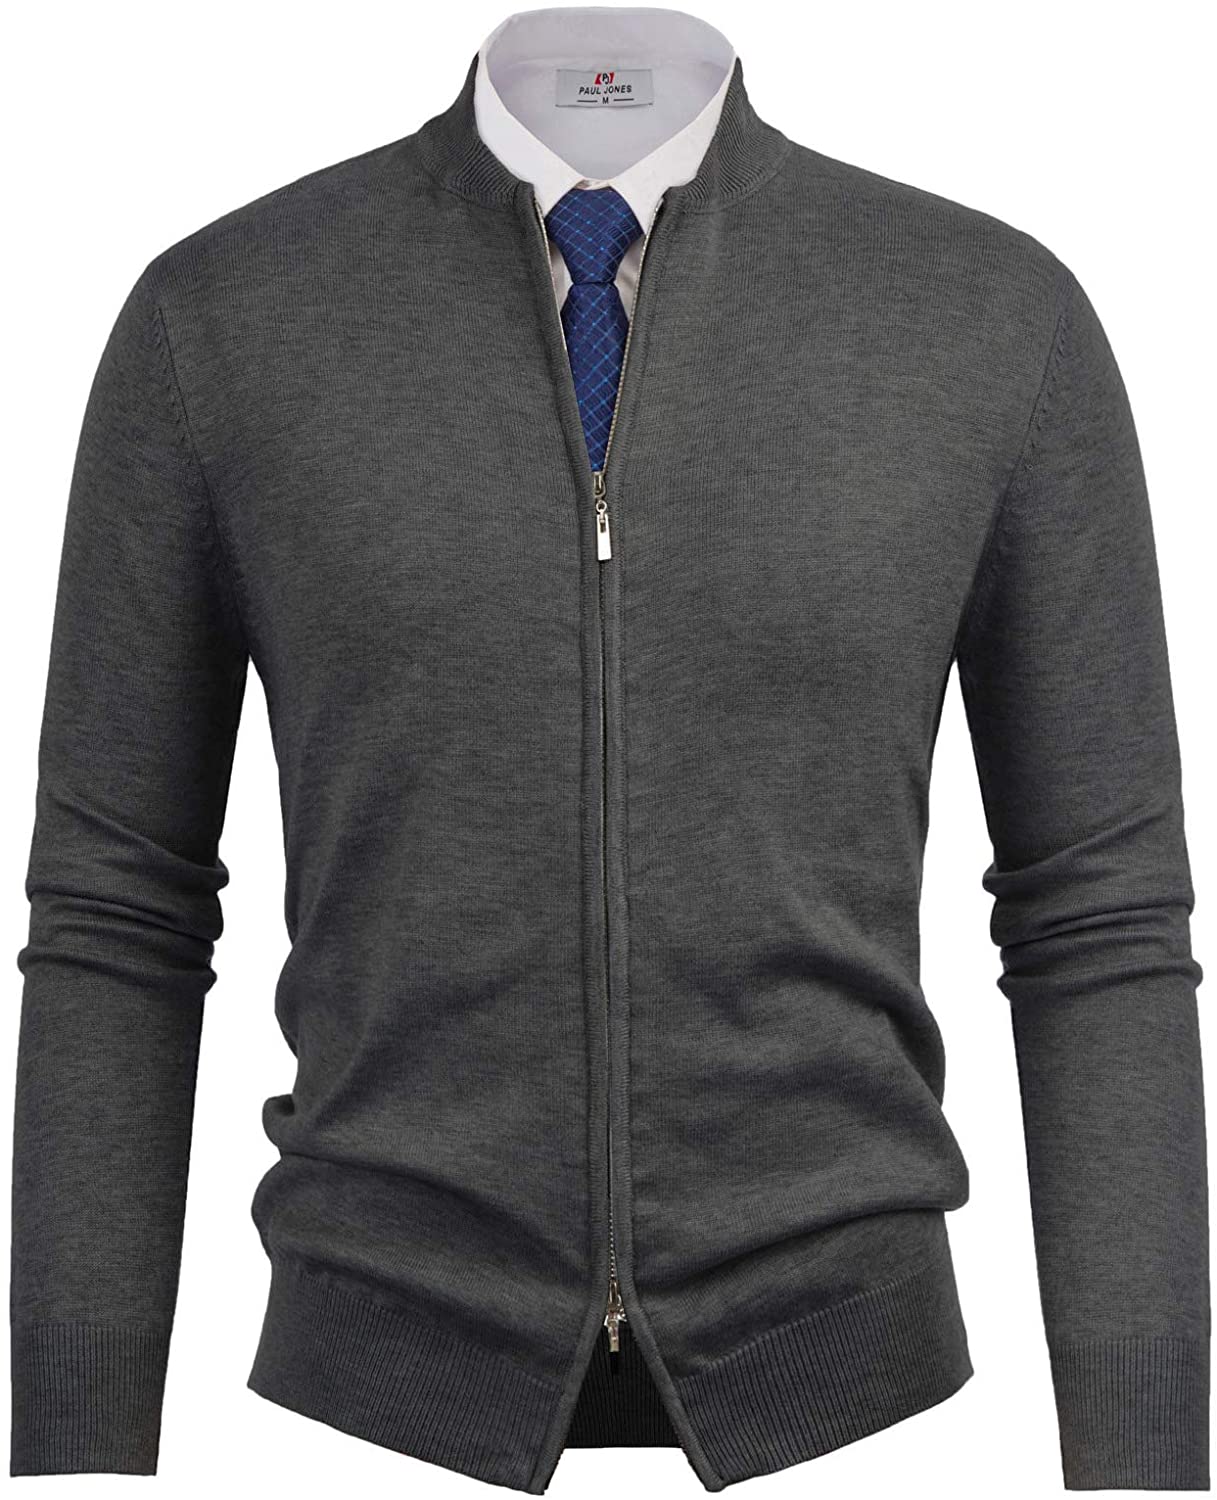 PJ PAUL JONES Mens Casual Full-Zip Cardingan Sweater Stand Collar Long ...